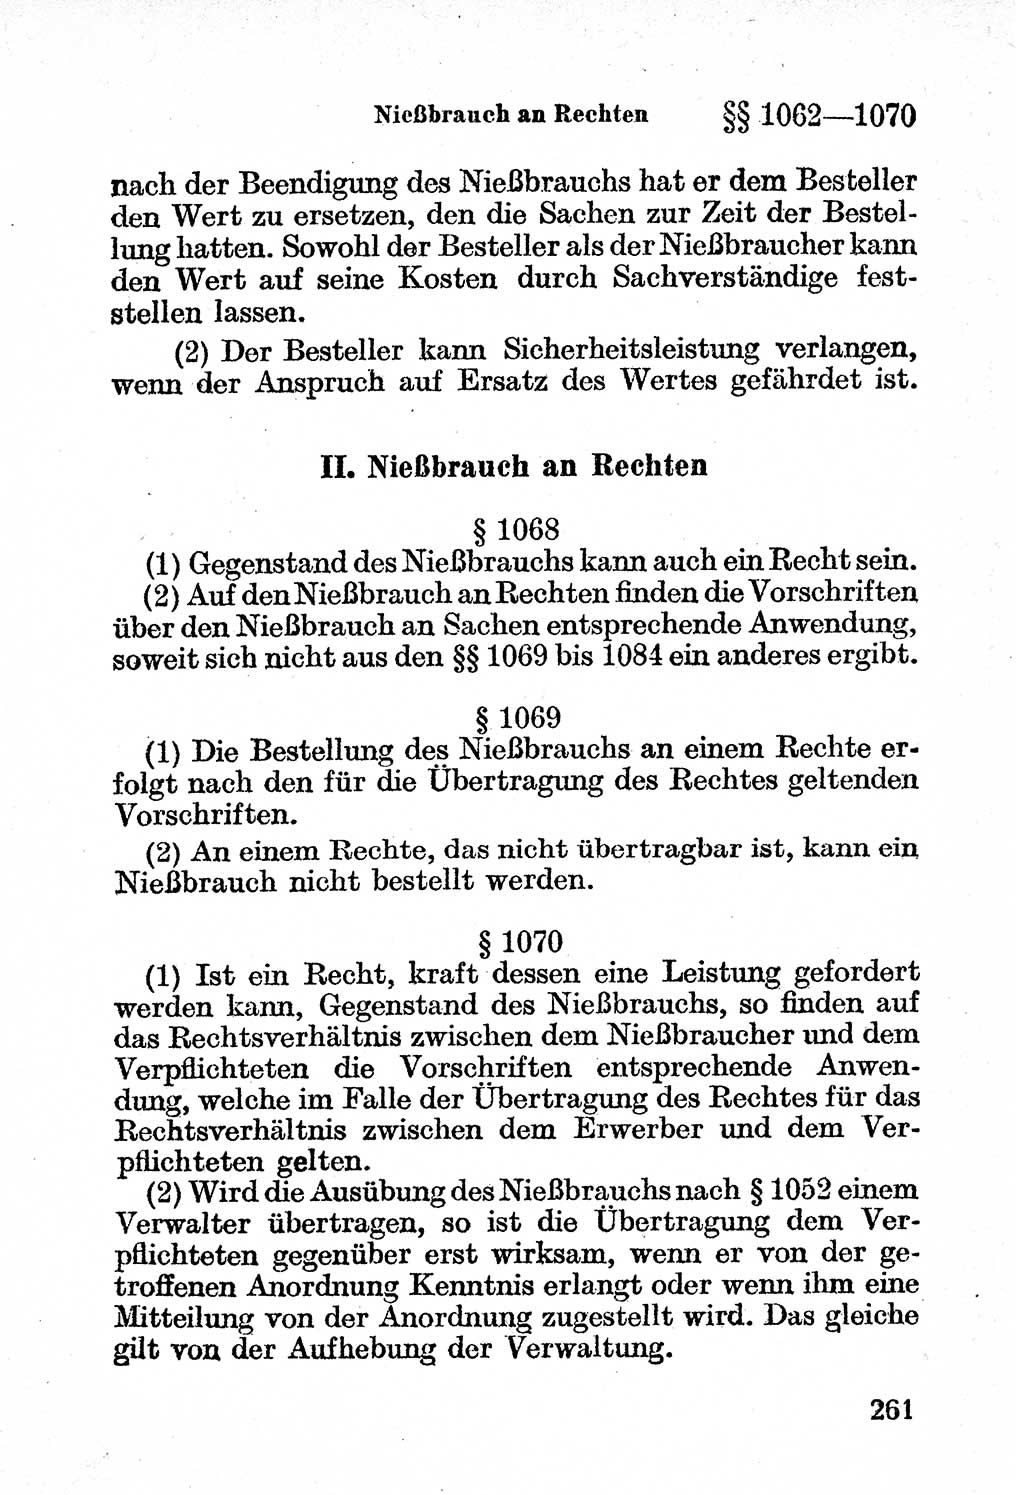 BÃ¼rgerliches Gesetzbuch (BGB) nebst wichtigen Nebengesetzen [Deutsche Demokratische Republik (DDR)] 1956, Seite 261 (BGB Nebenges. DDR 1956, S. 261)